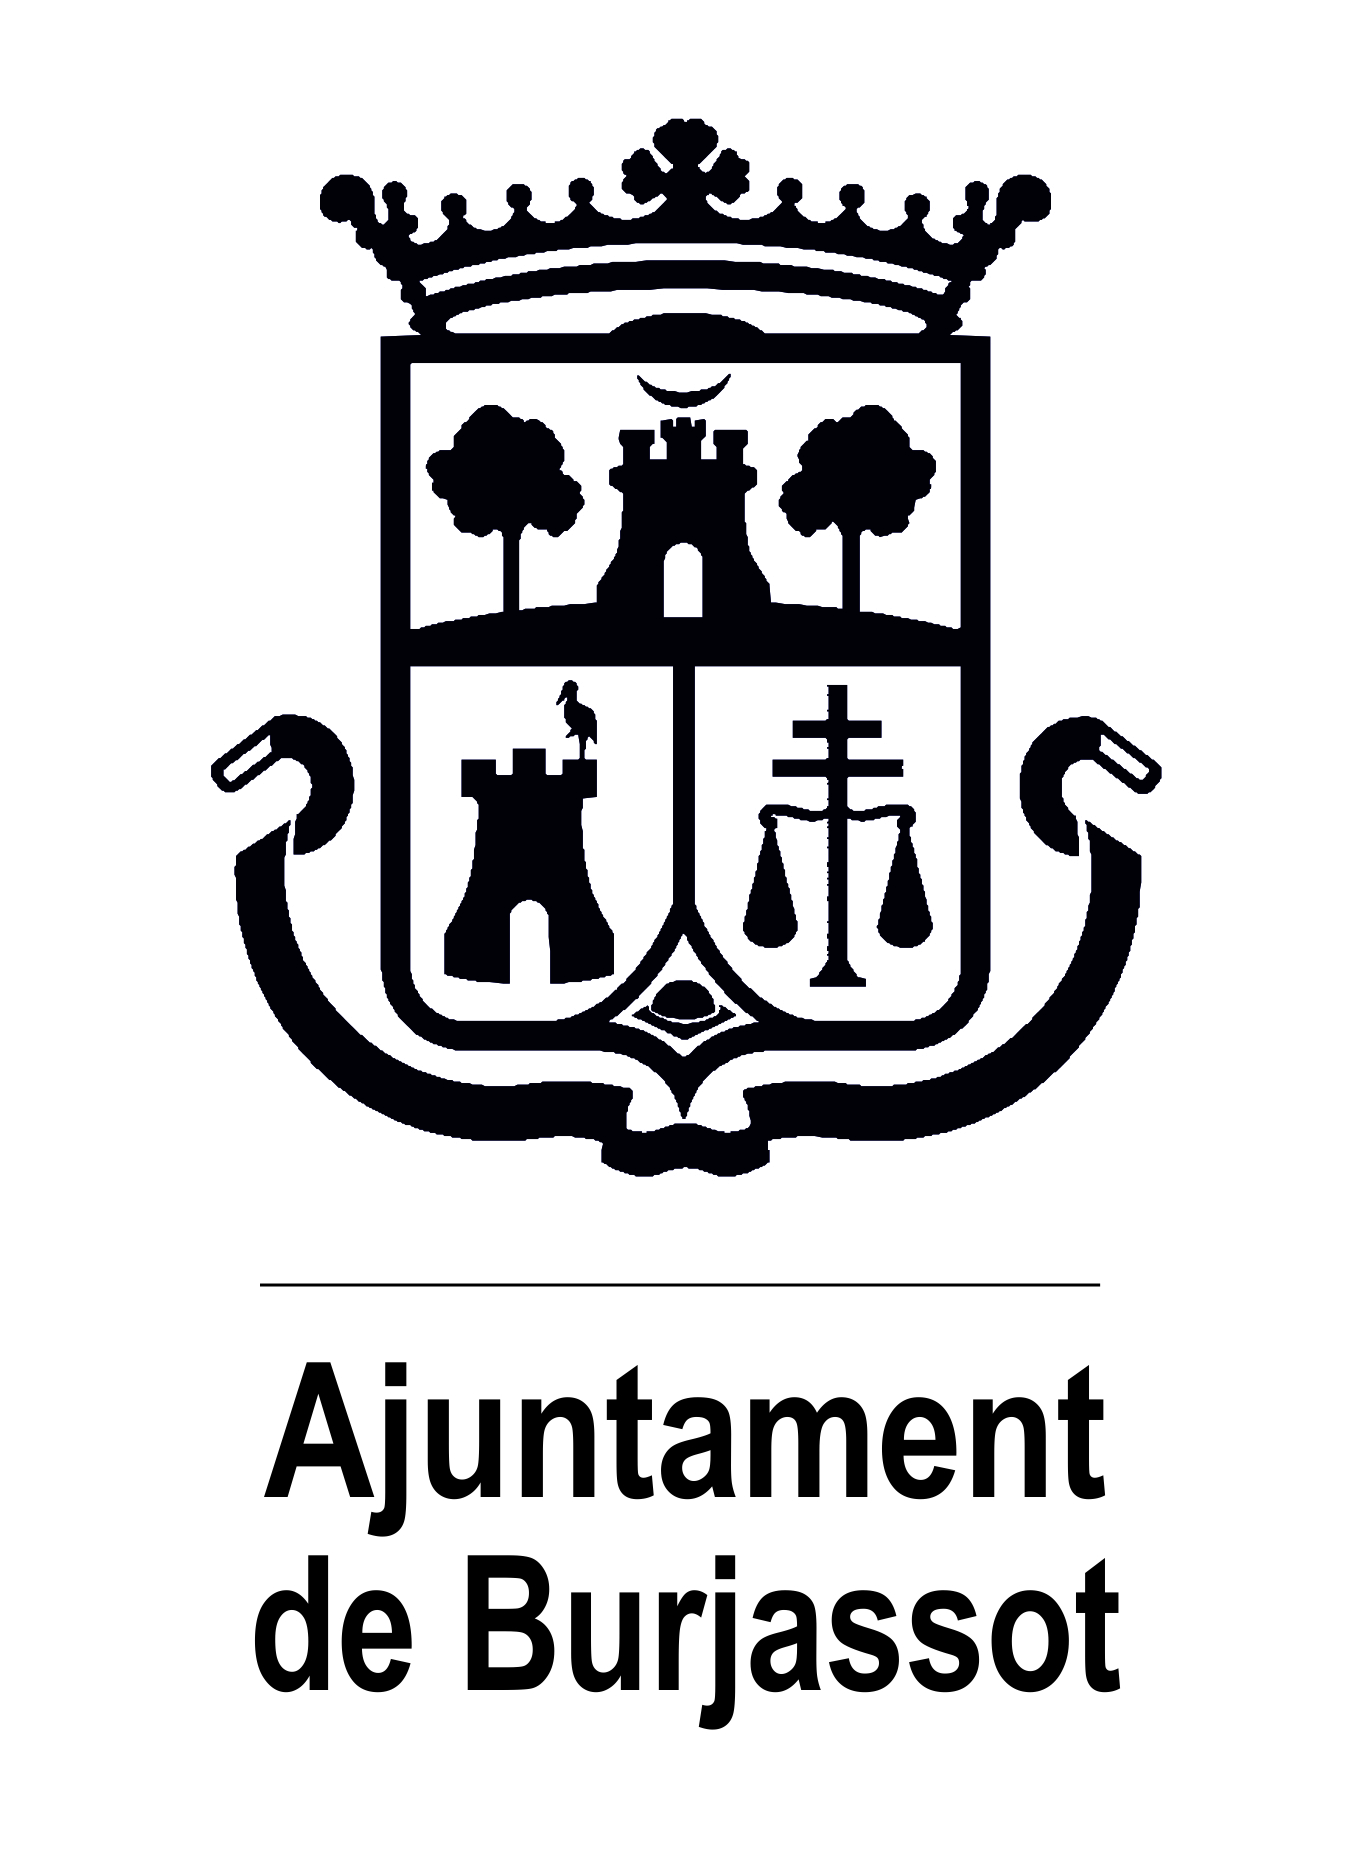 Los colegios de Burjassot reciben dispositivos antiatragantamiento –  Ajuntament de Burjassot